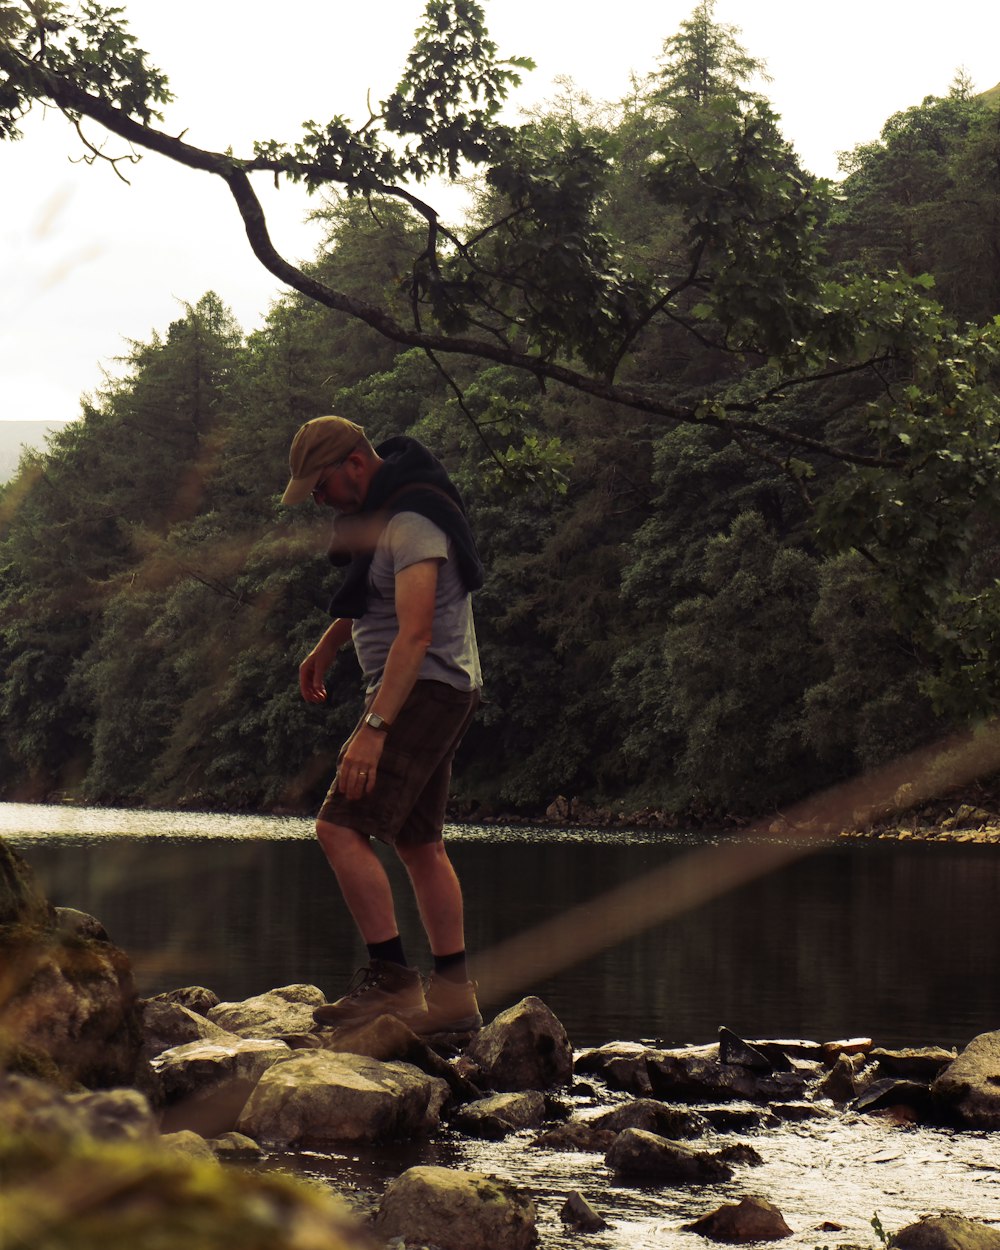 Una persona parada en una roca cerca de un río